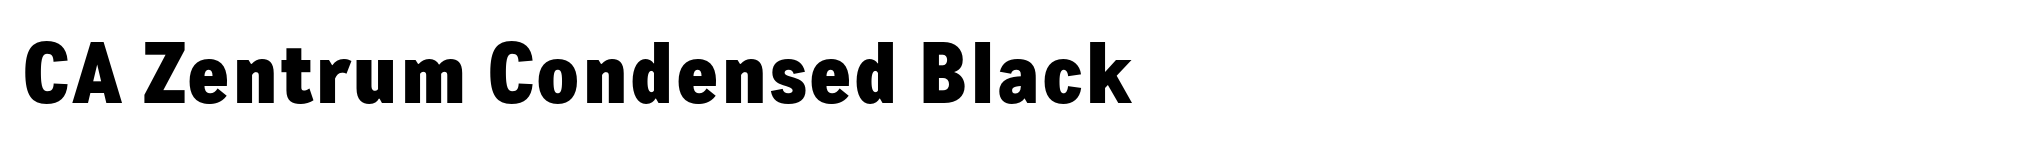 CA Zentrum Condensed Black image